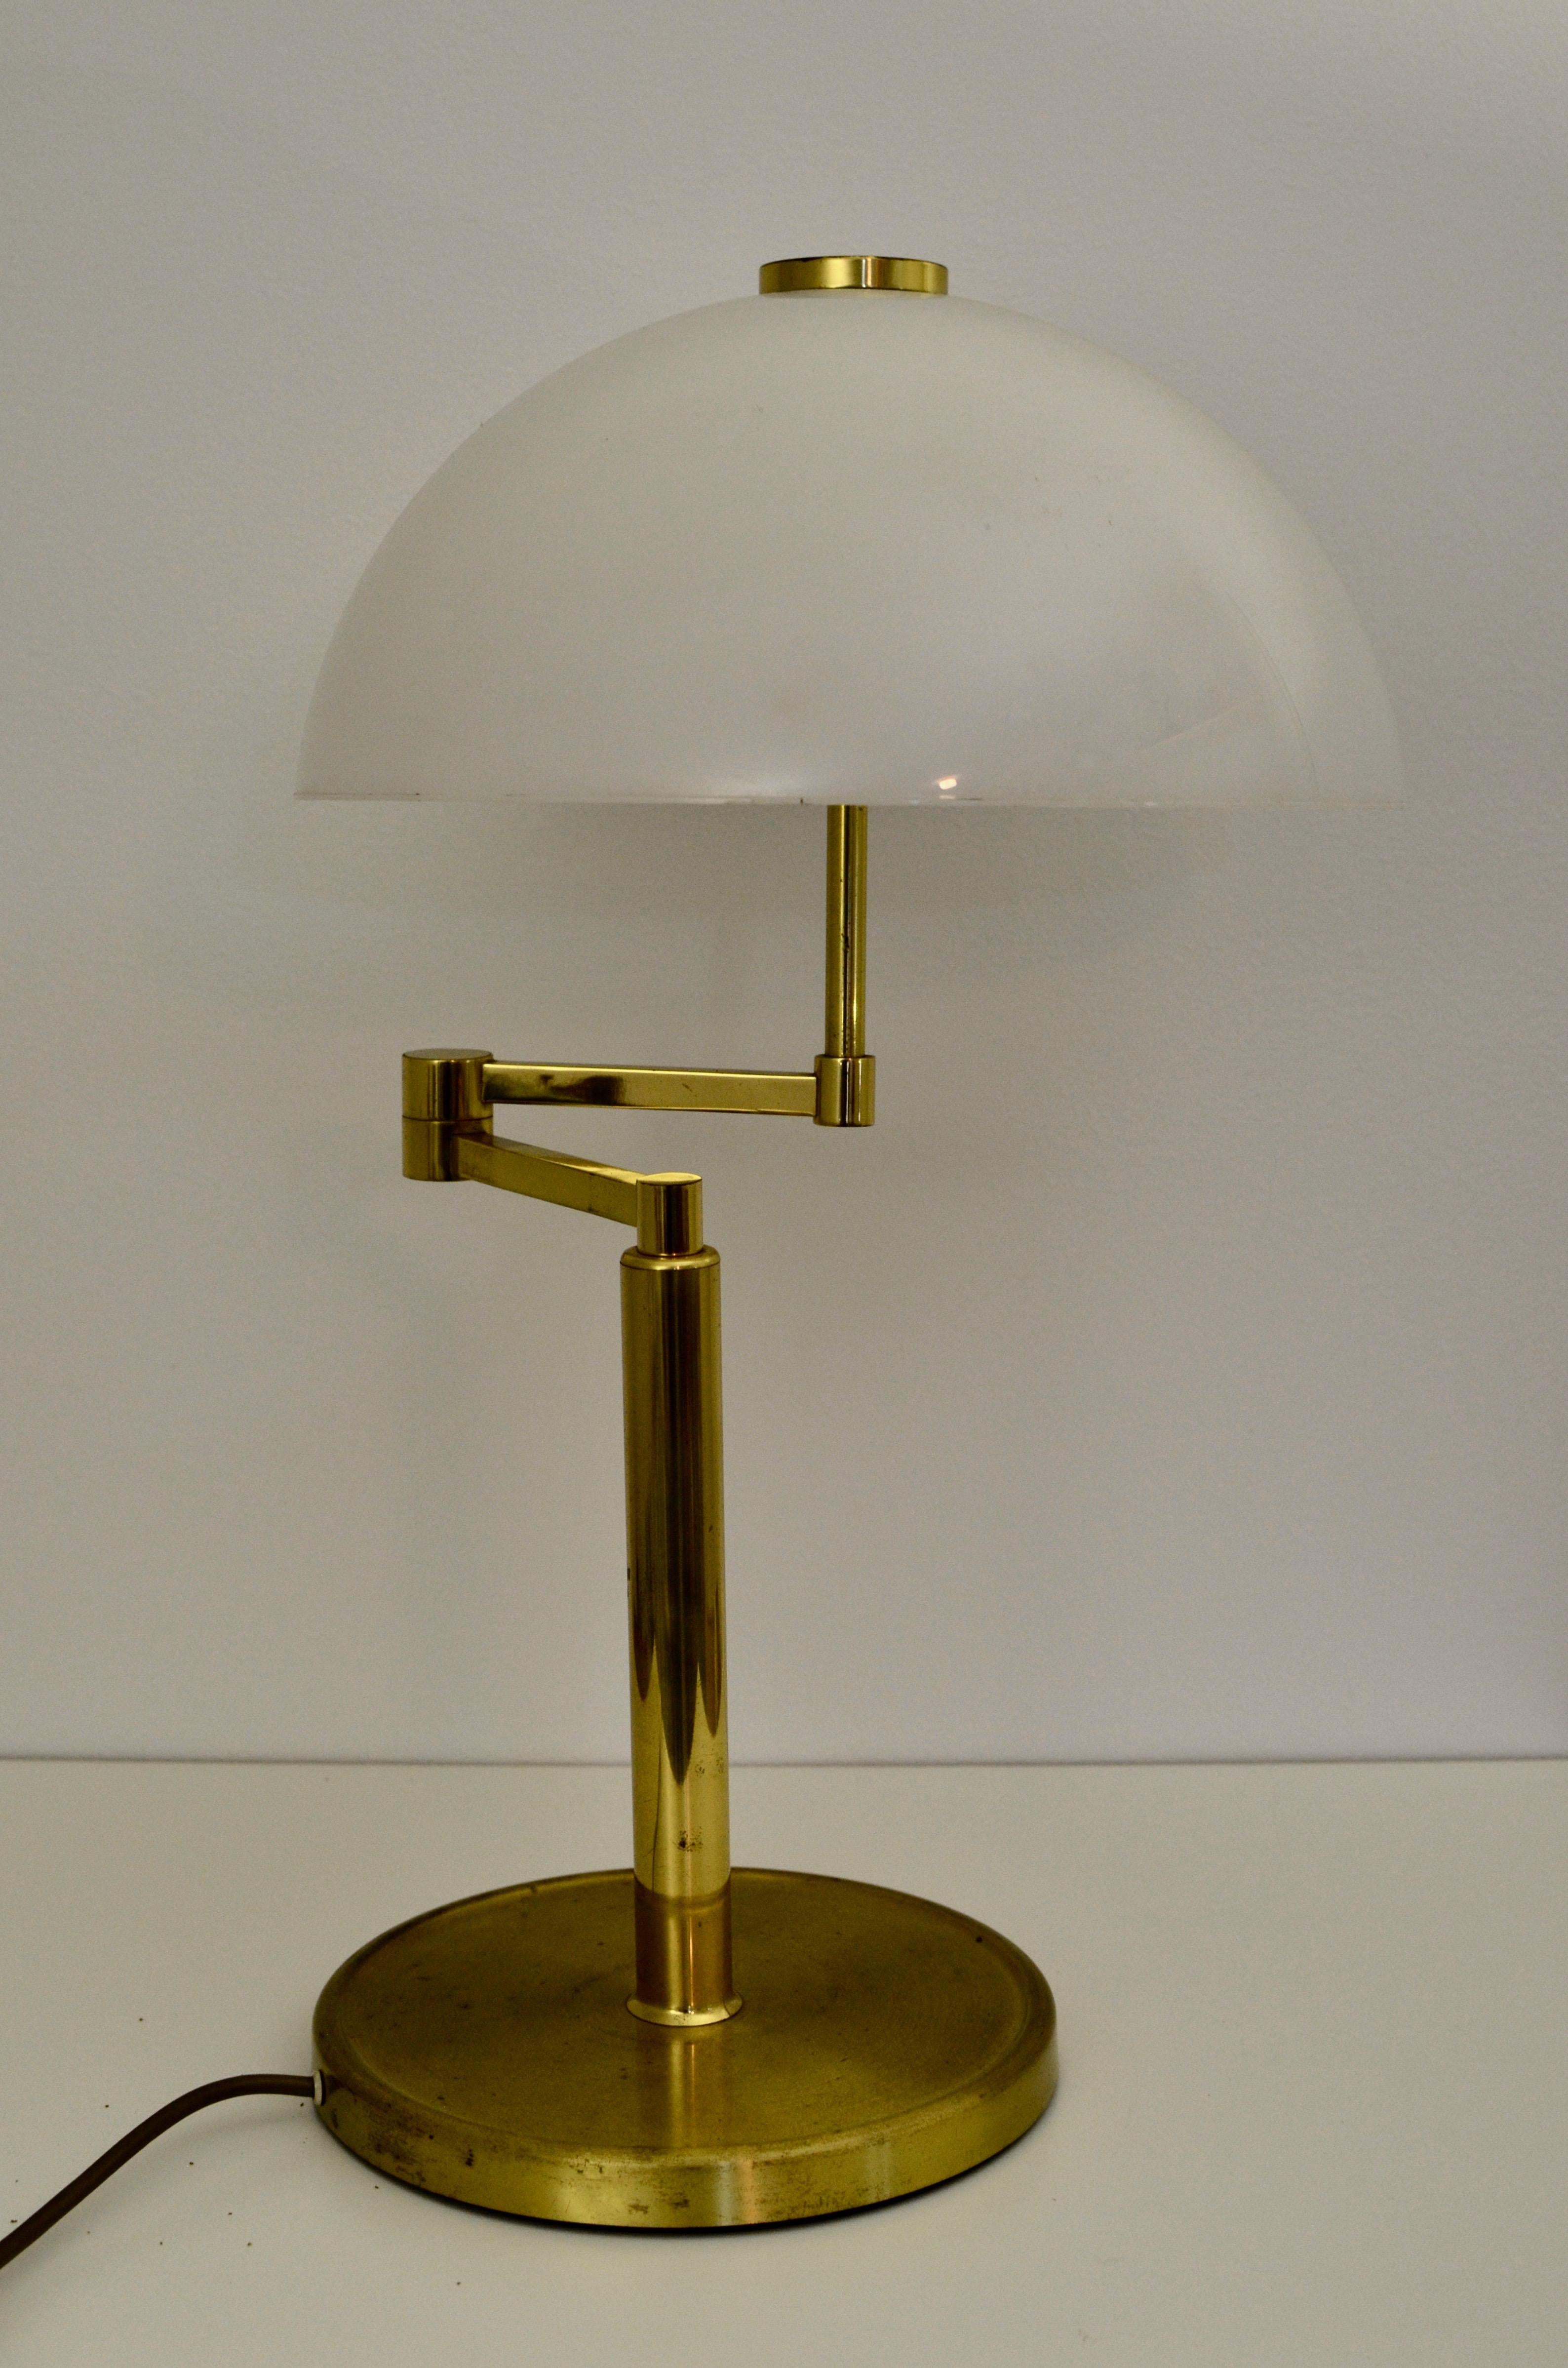 Lampe de table Vintage

Style : Art Déco

Période de production : 1950s